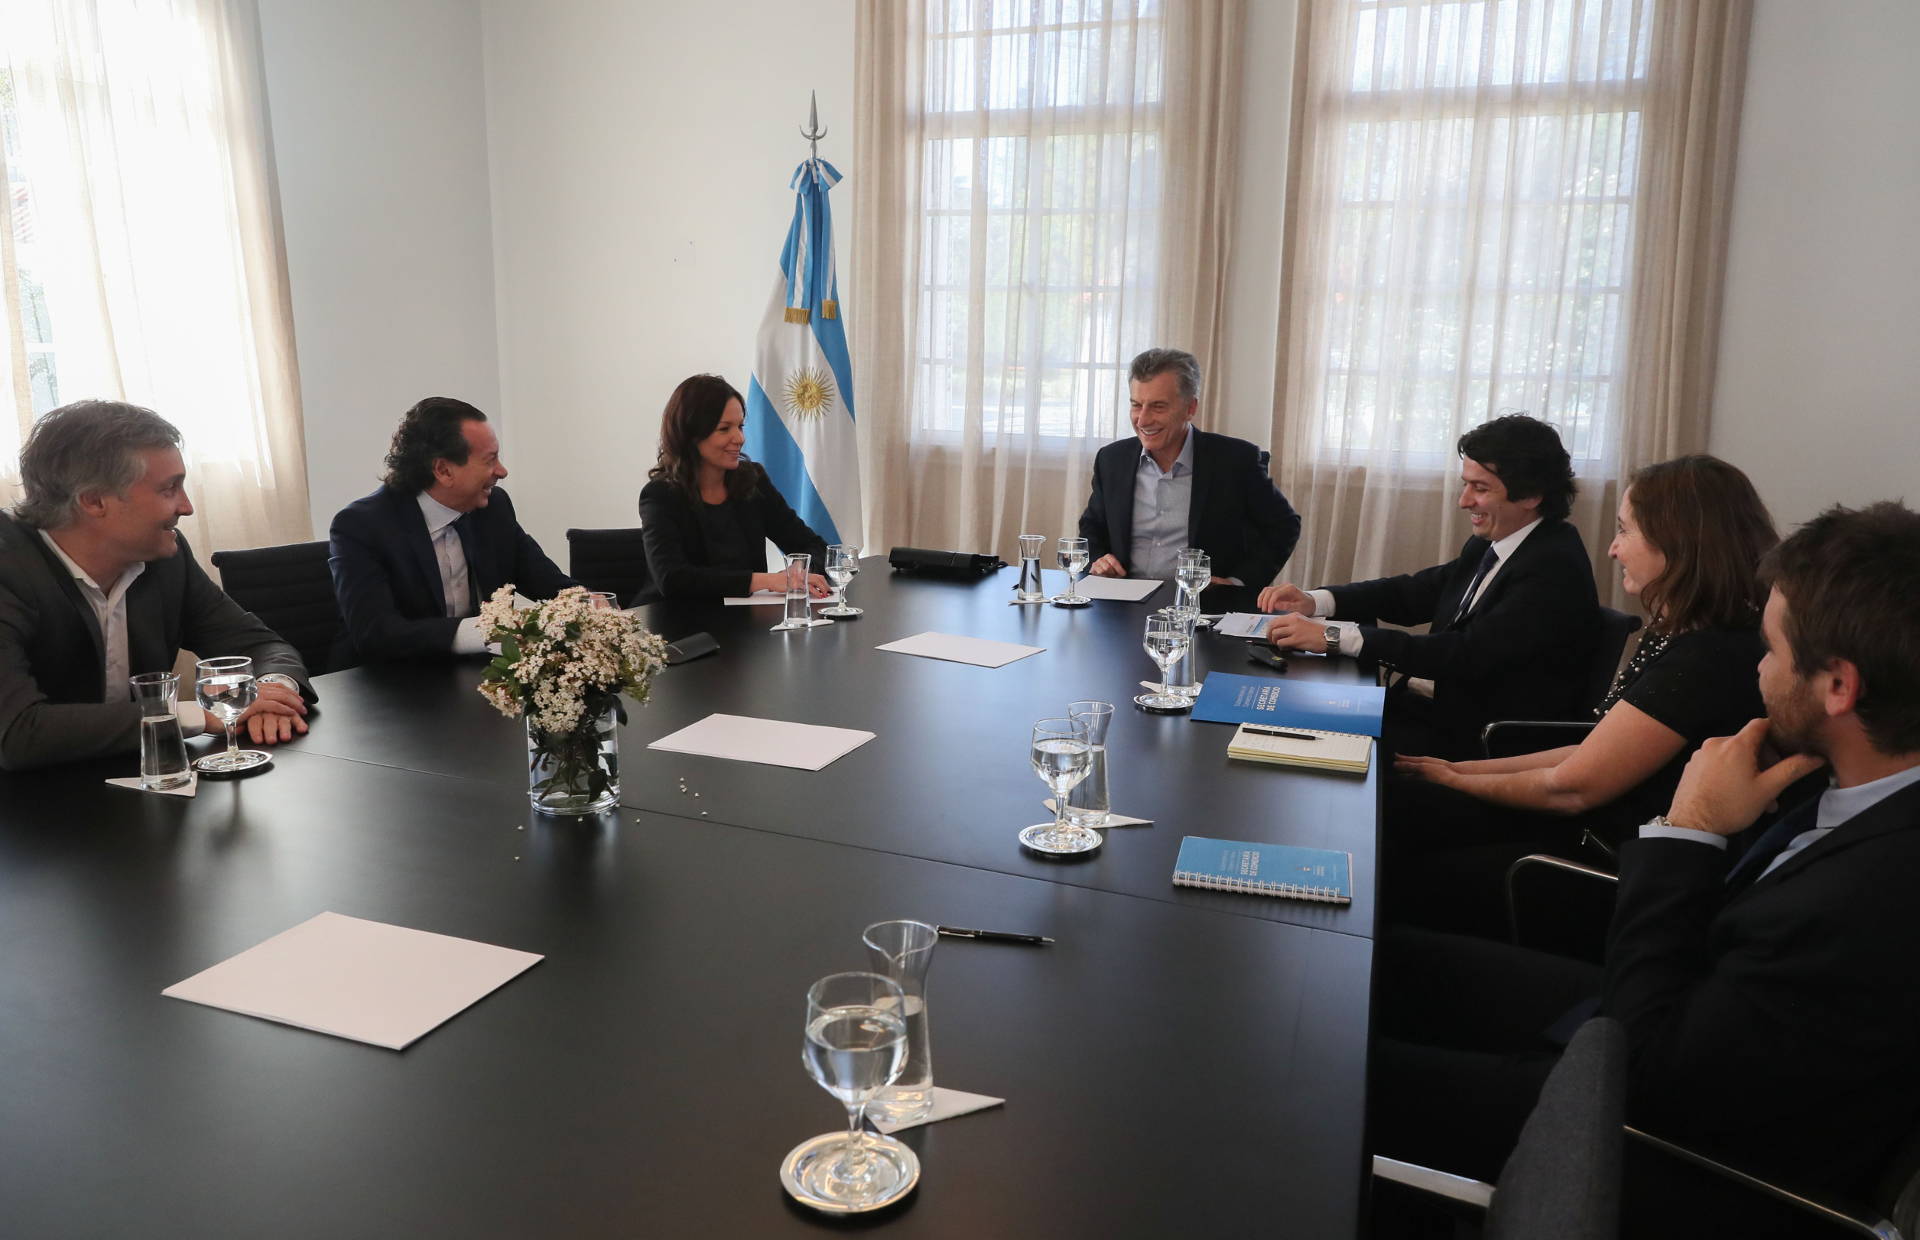 El presidente Macri analizó los avances del programa Precios Cuidados